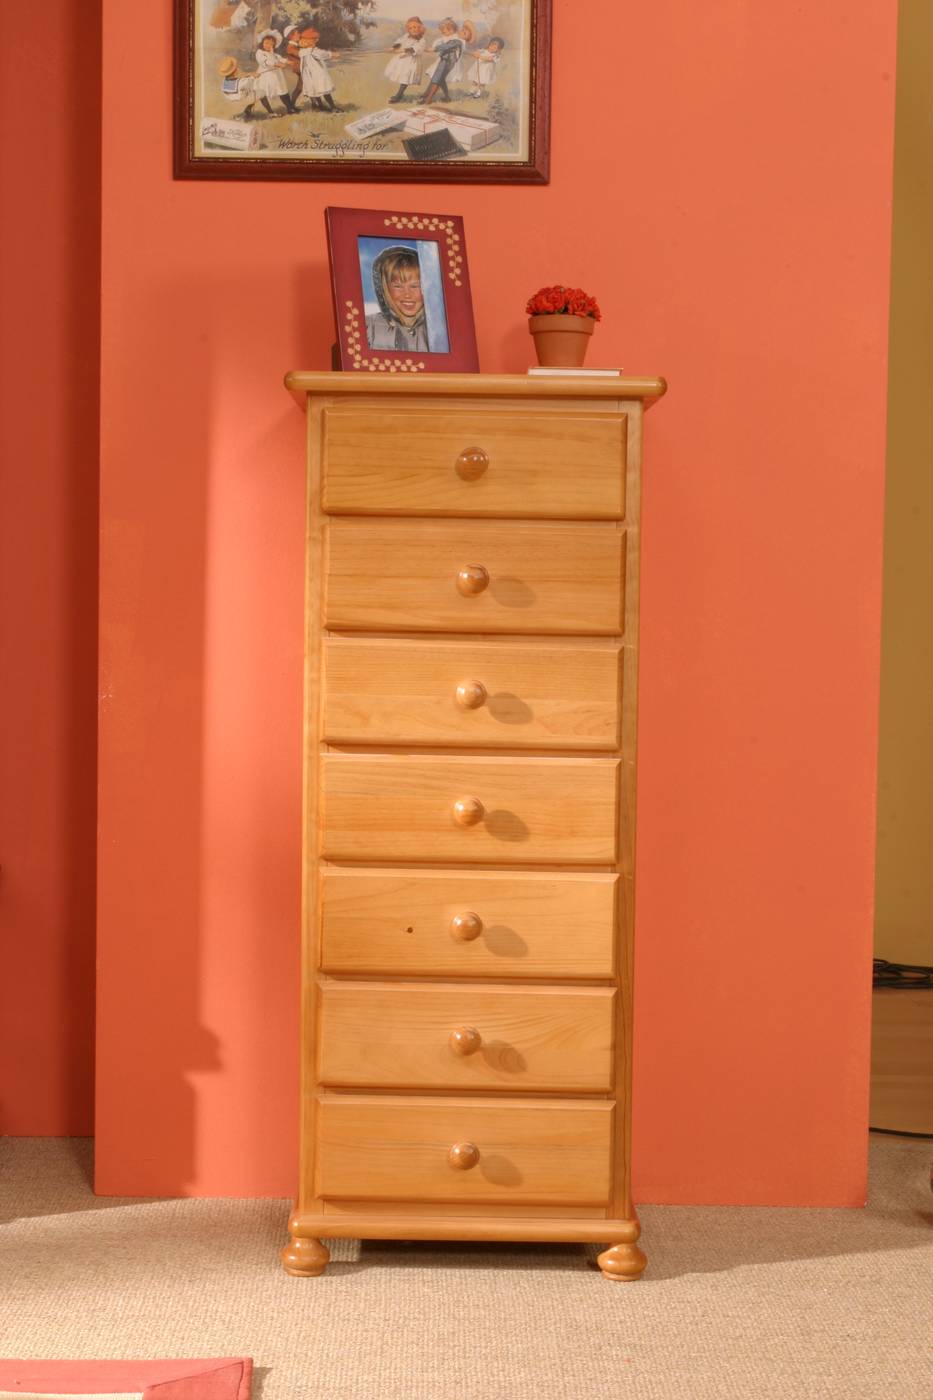 Sifonier 7 cajones para dormitorio juvenil o matrimonio, de madera de pino maciza, pintado en una amplia gama de colores